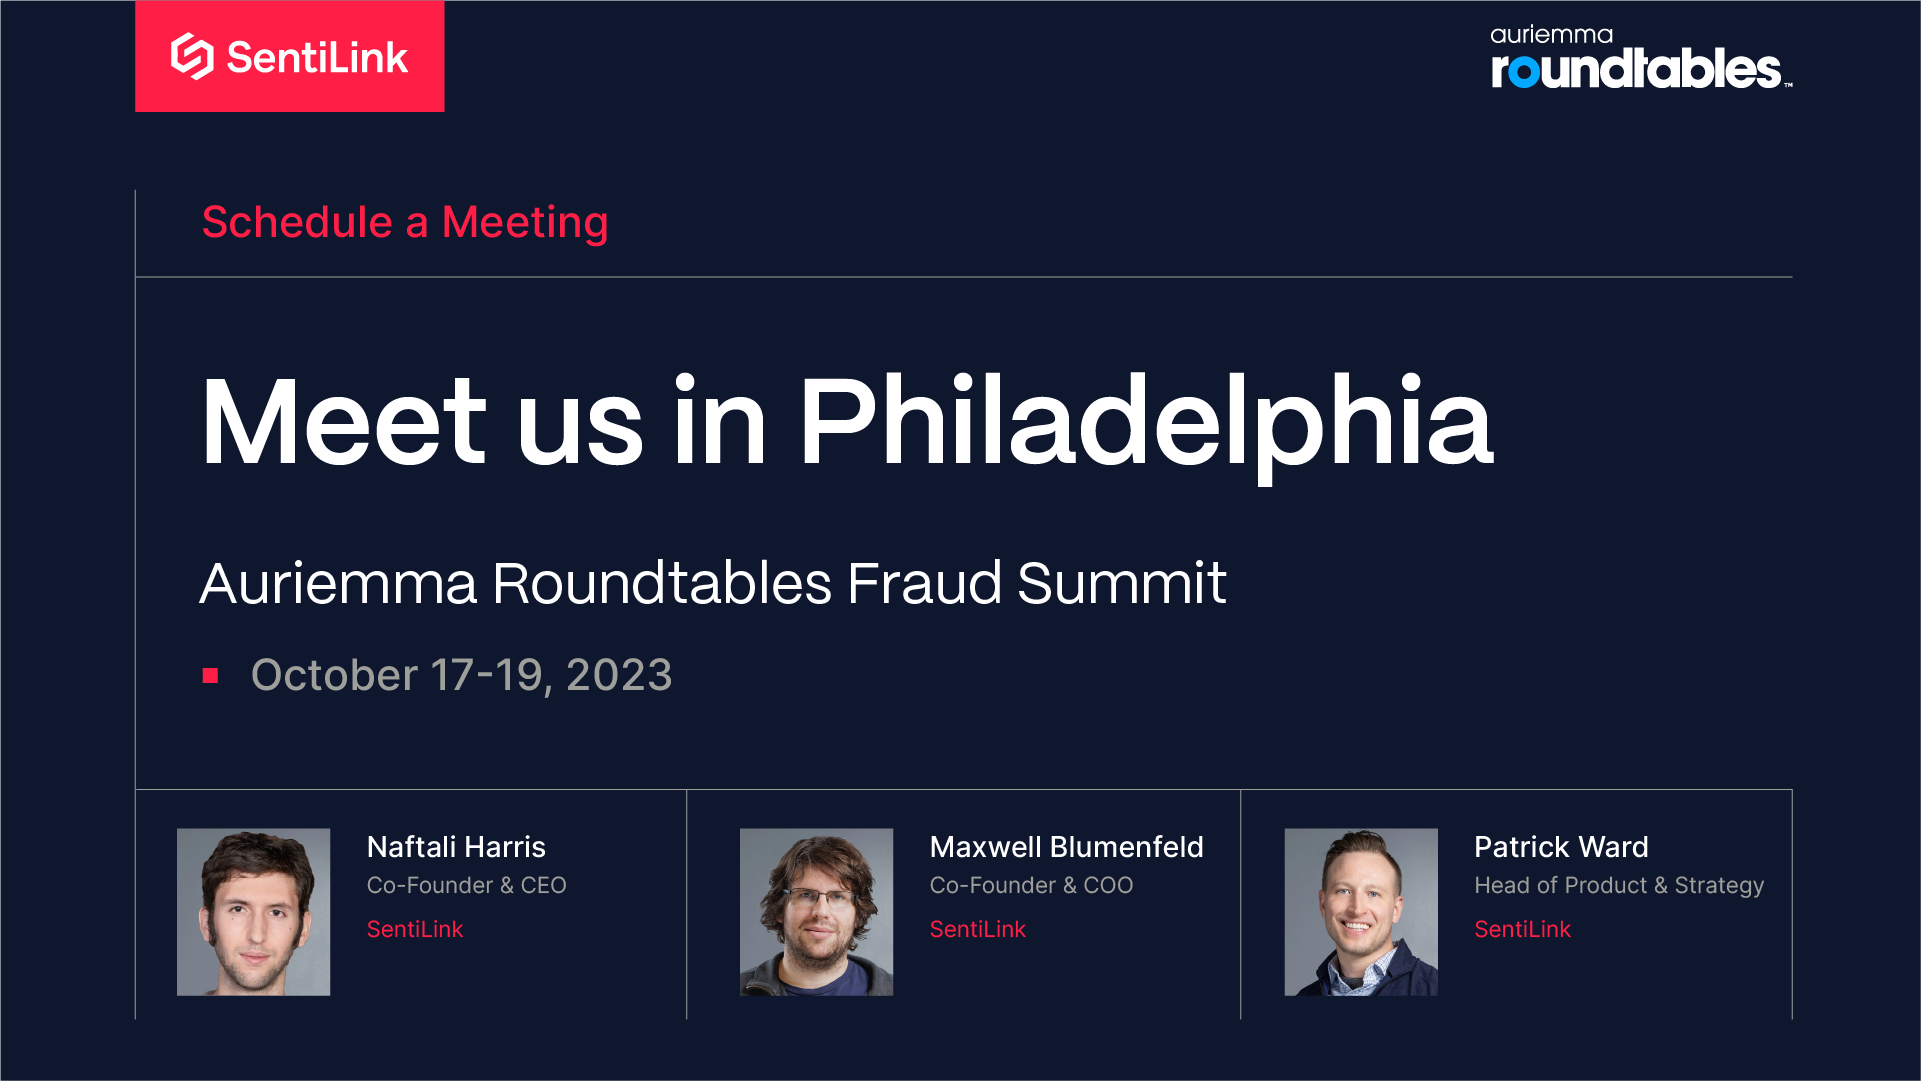 Meet us in Philadelphia at Auriemma Roundtables Fraud Summit